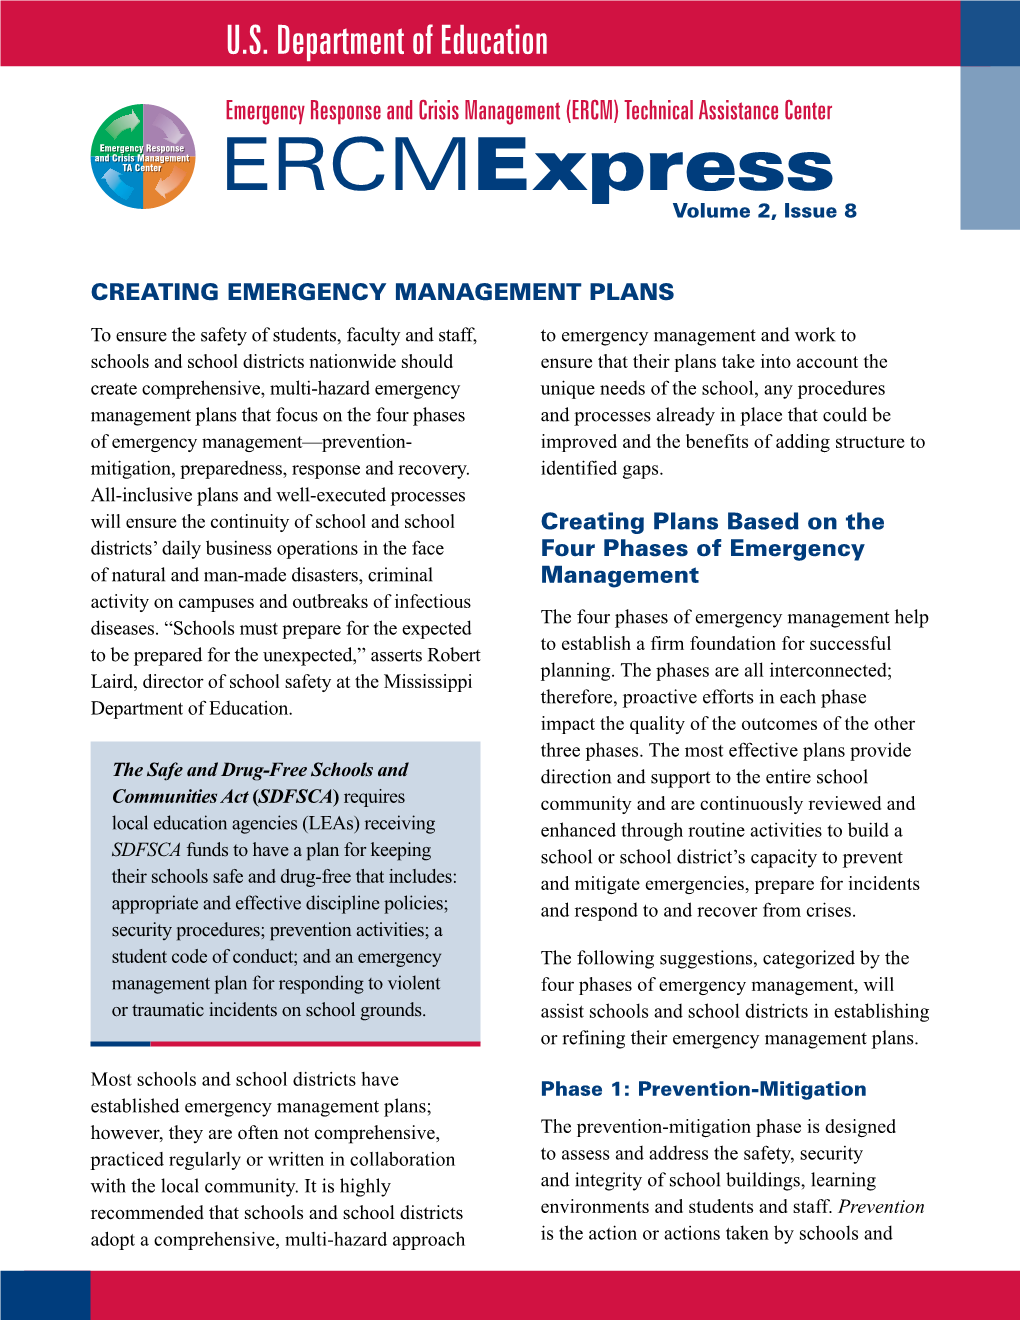 Ercmexpress Volume 2, Issue 8